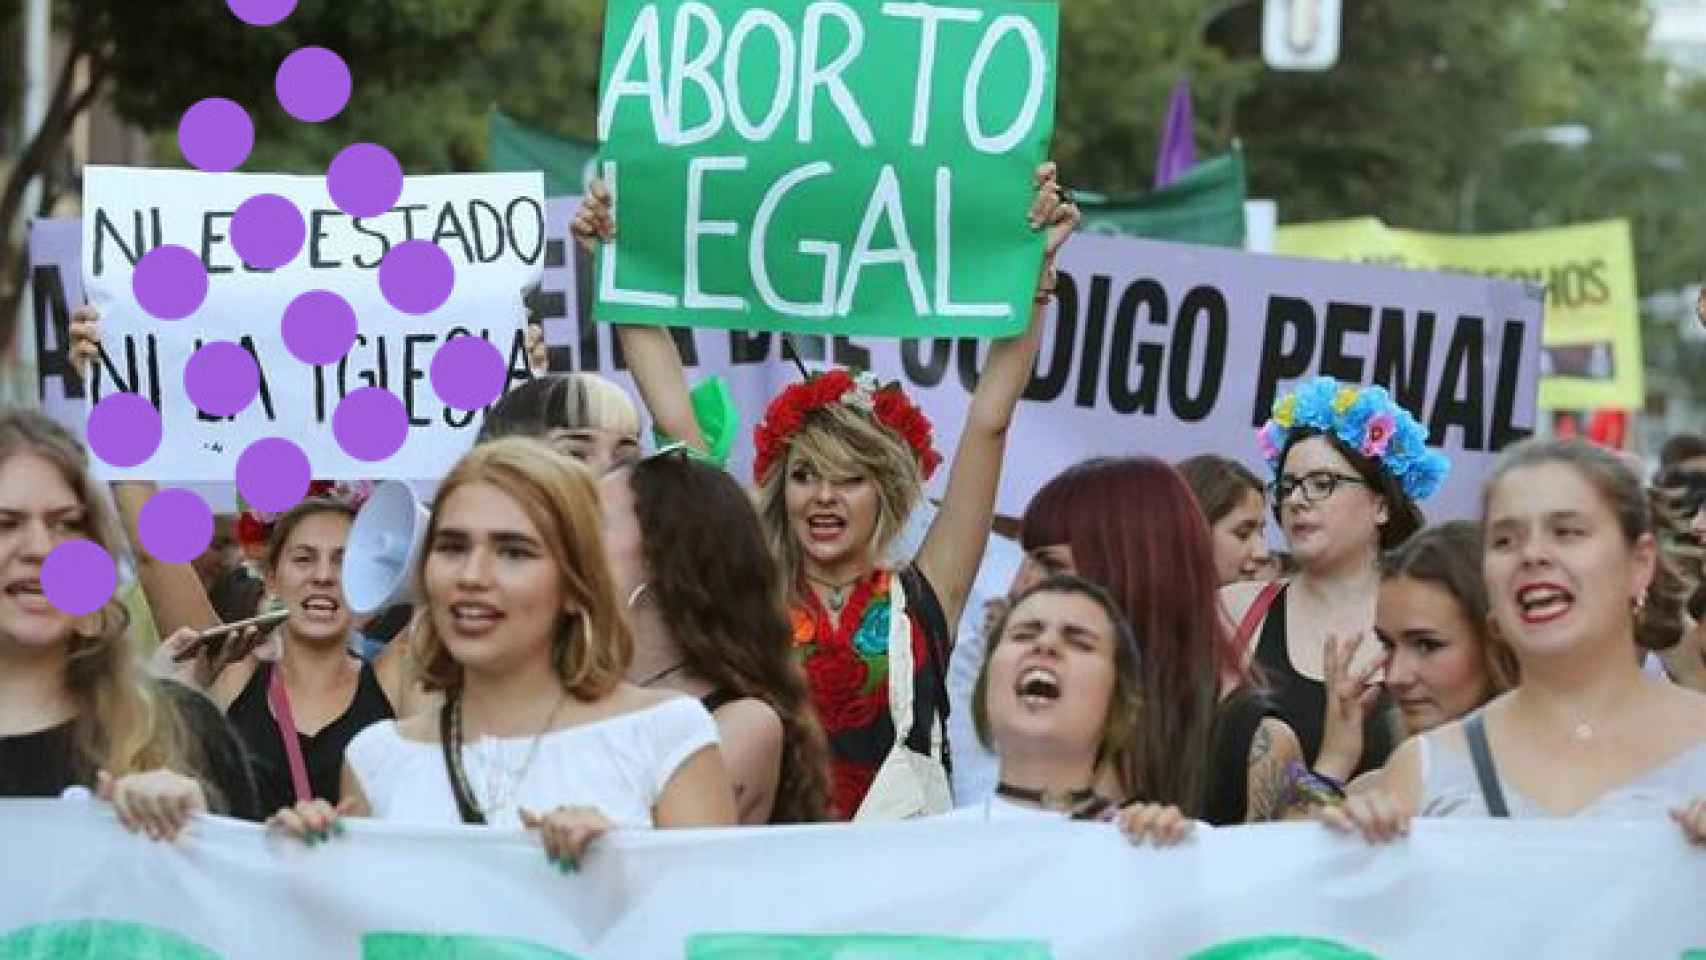 Una manifestación por el derecho al aborto.